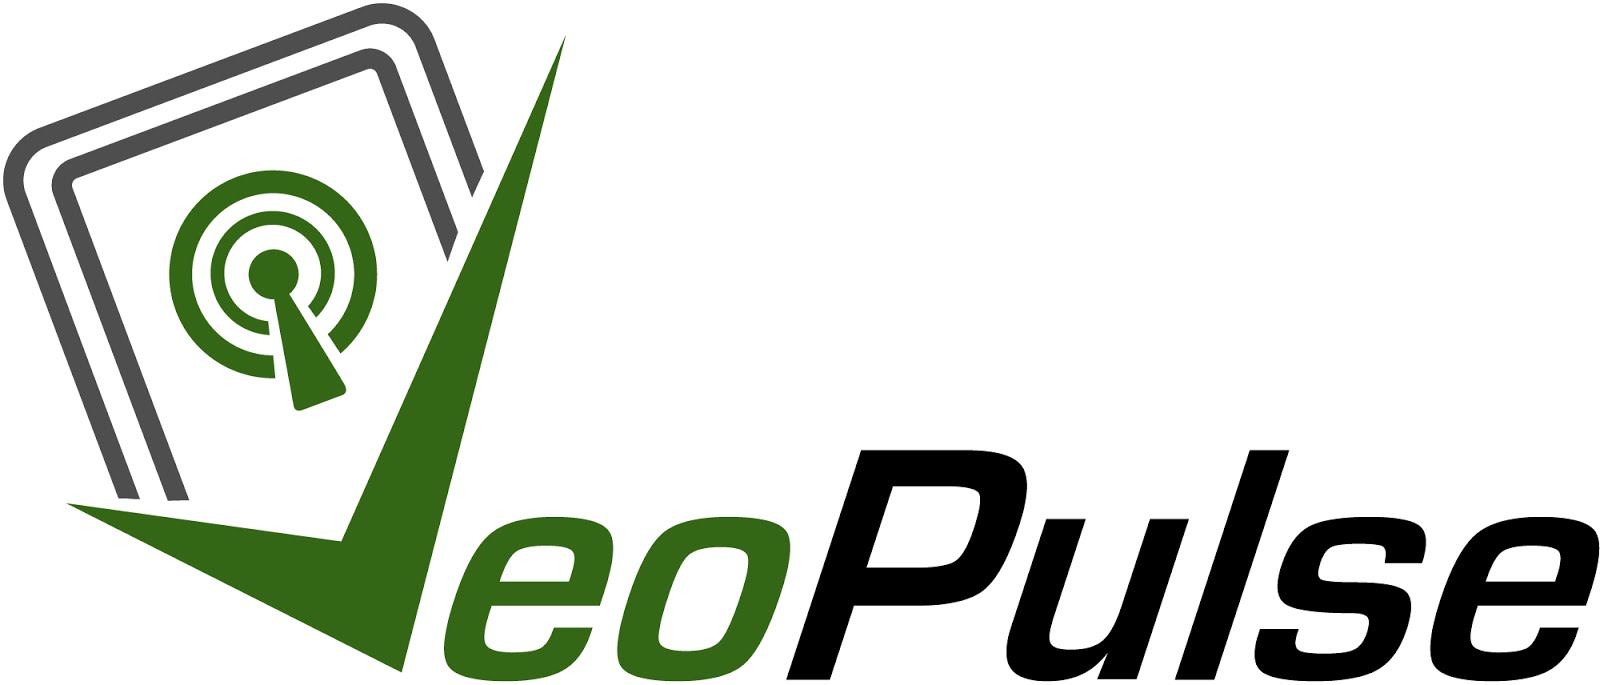 Collaborazione con VeoPulse (Amazon.it-VeoPulse)